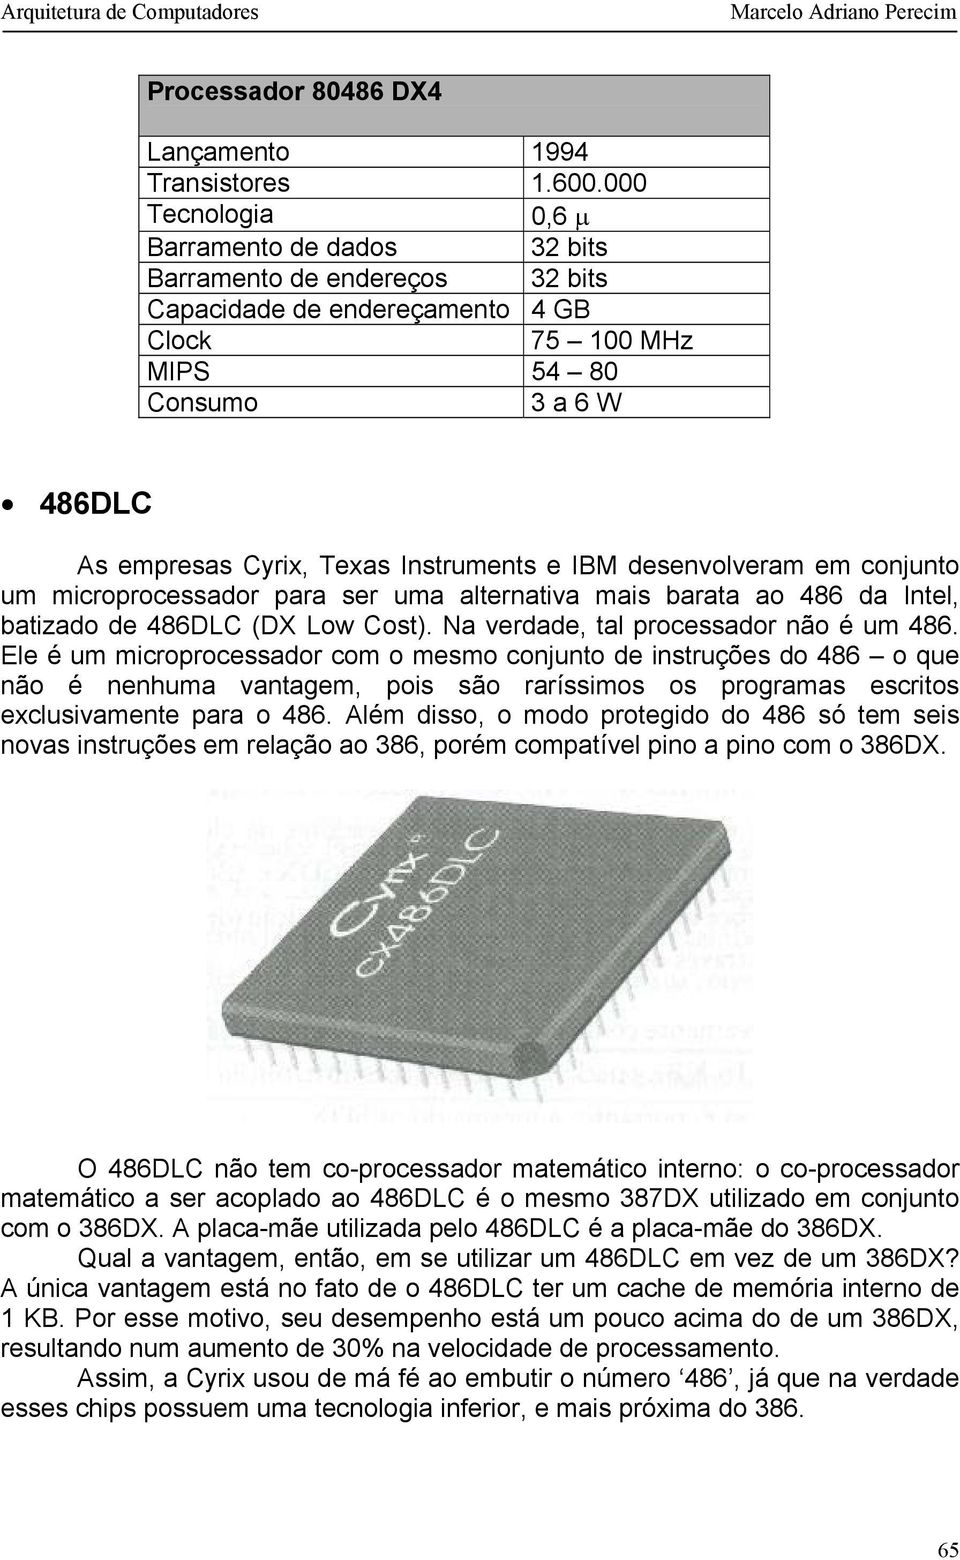 Instruments e IBM desenvolveram em conjunto um microprocessador para ser uma alternativa mais barata ao 486 da Intel, batizado de 486DLC (DX Low Cost). Na verdade, tal processador não é um 486.